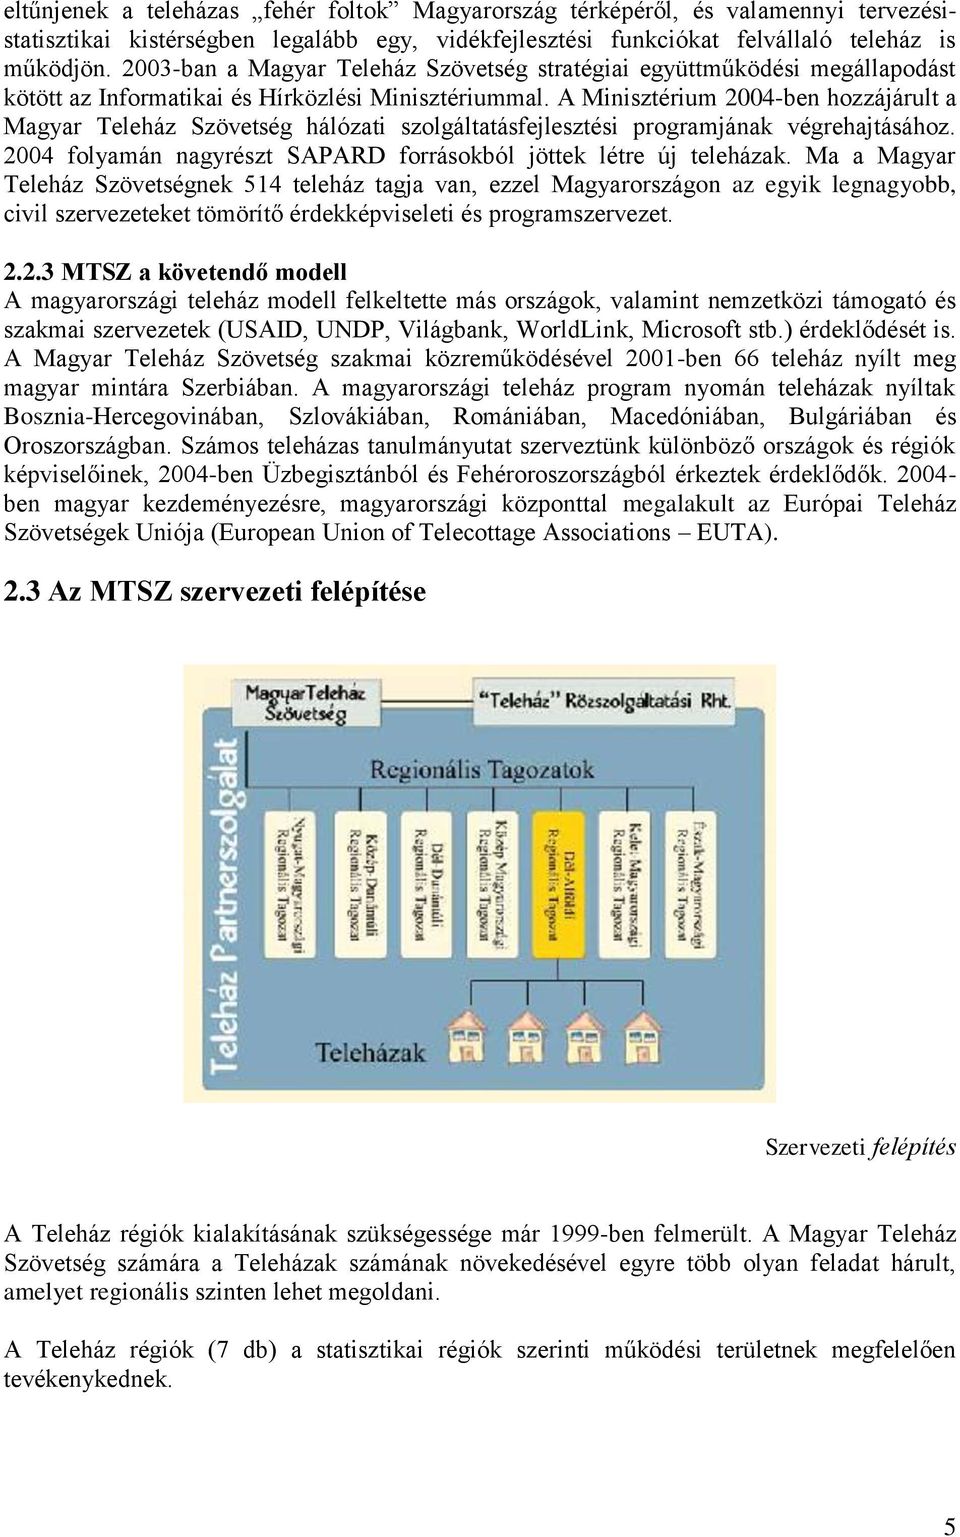 A Minisztérium 2004-ben hozzájárult a Magyar Teleház Szövetség hálózati szolgáltatásfejlesztési programjának végrehajtásához. 2004 folyamán nagyrészt SAPARD forrásokból jöttek létre új teleházak.